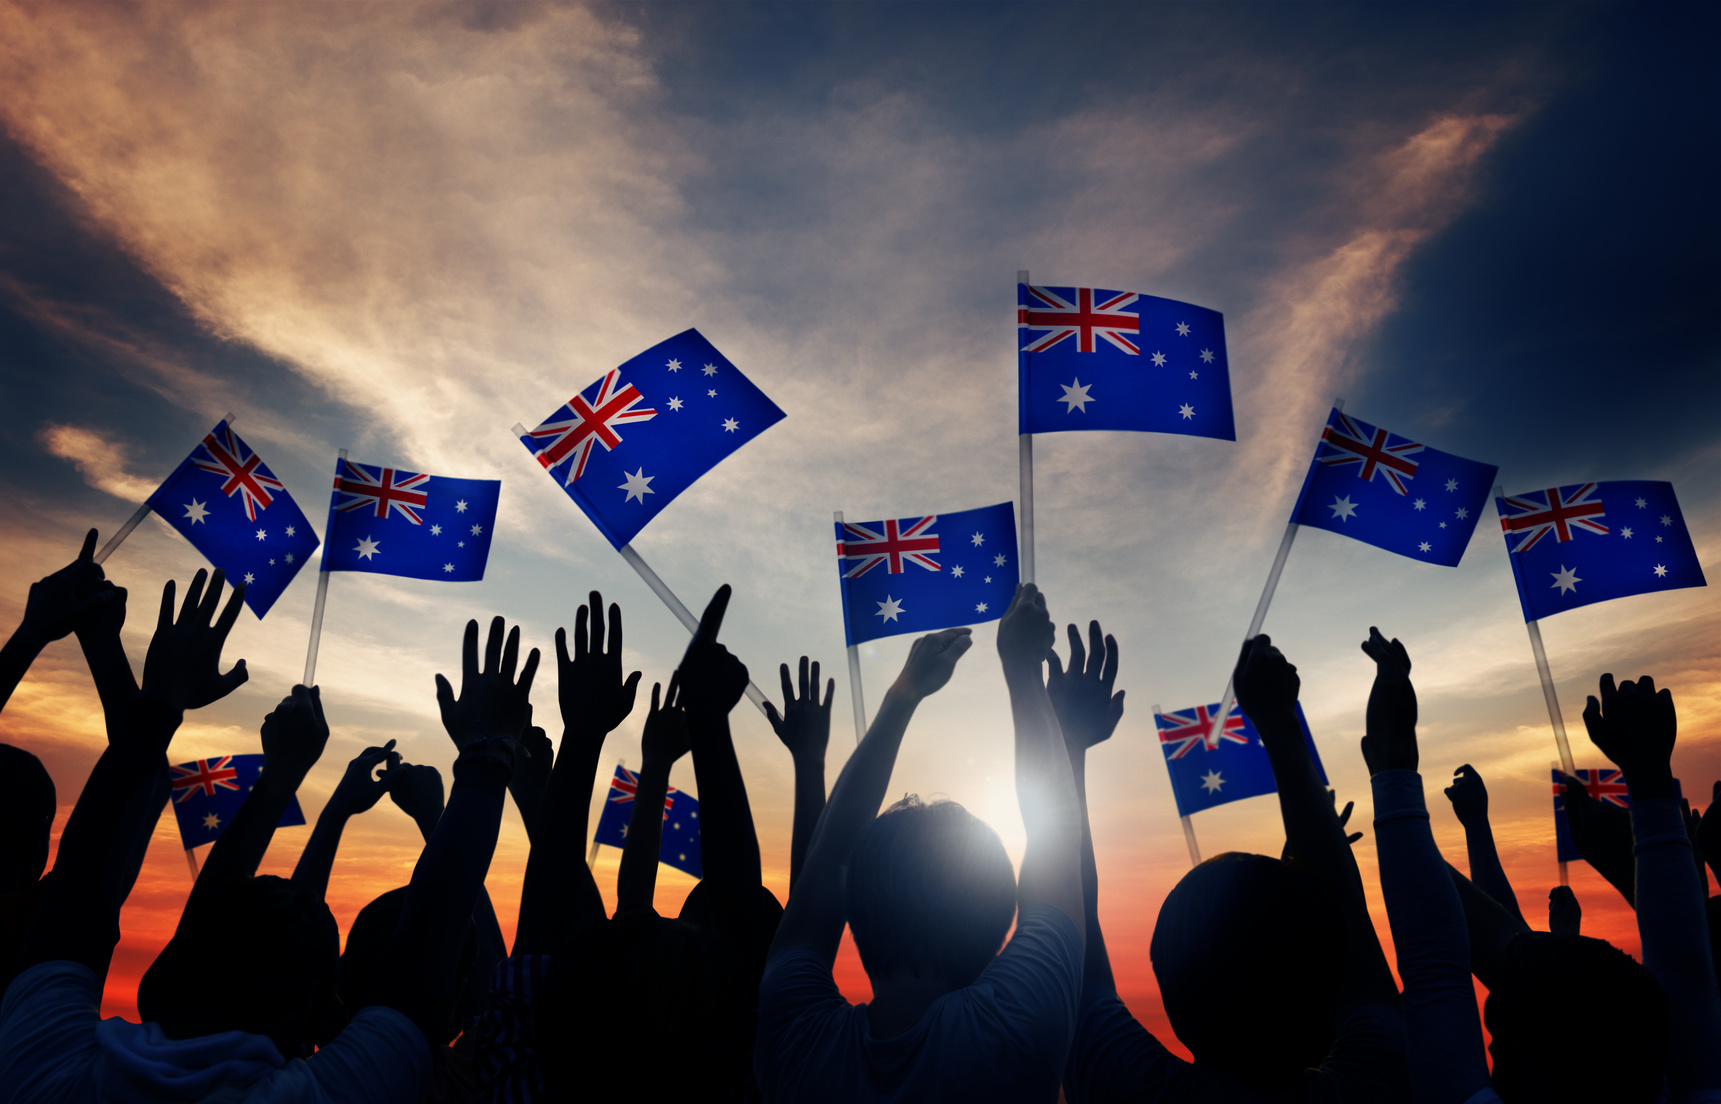 Group of People Waving Australian Flags in Back Lit Littlegate Publishing